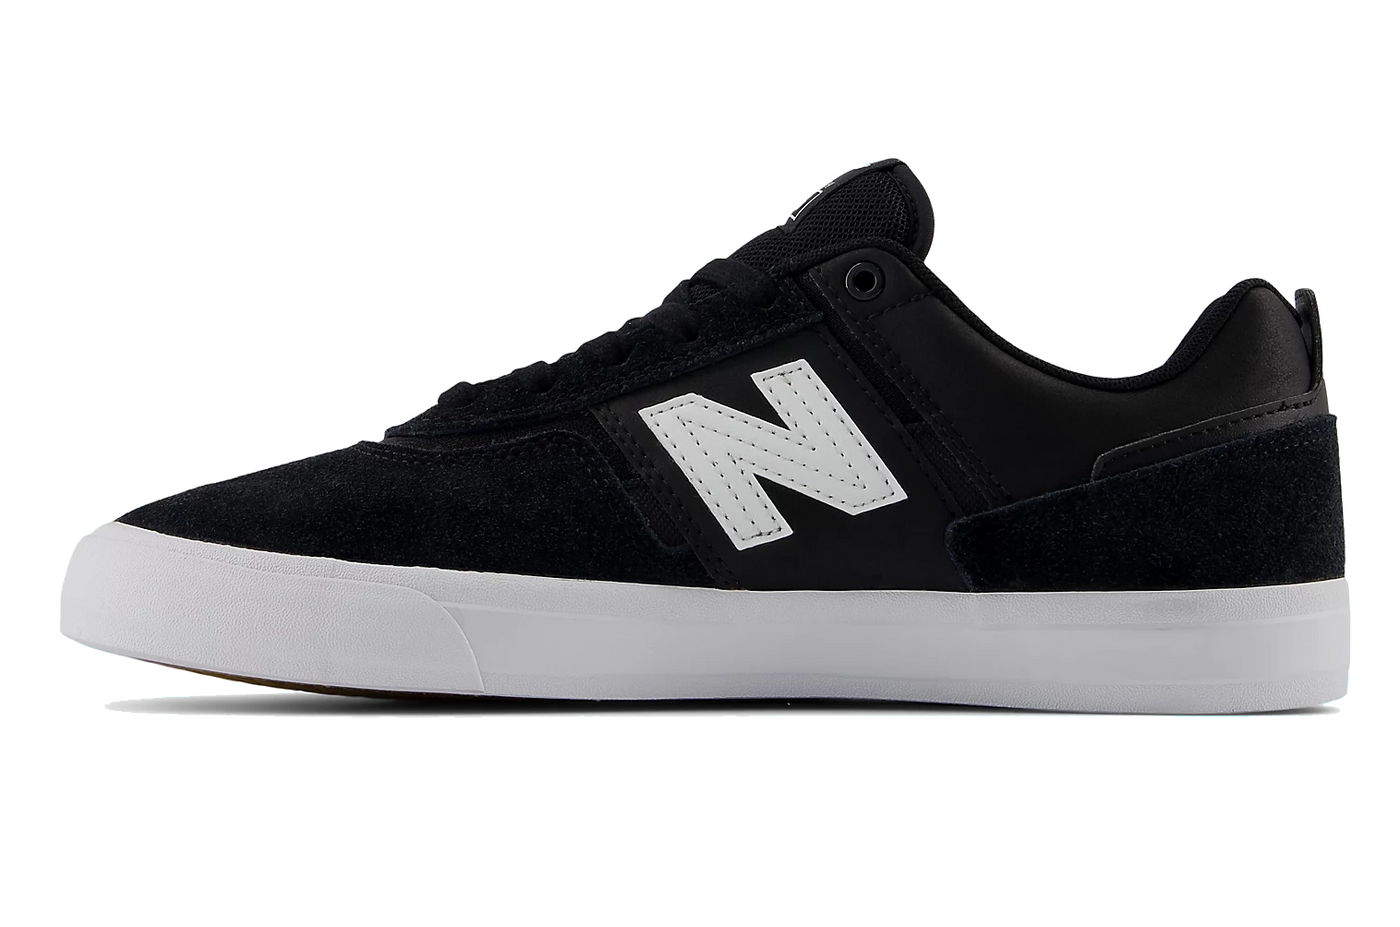 New Balance Numeric Jamie Foy 306 Shoe, Black with White